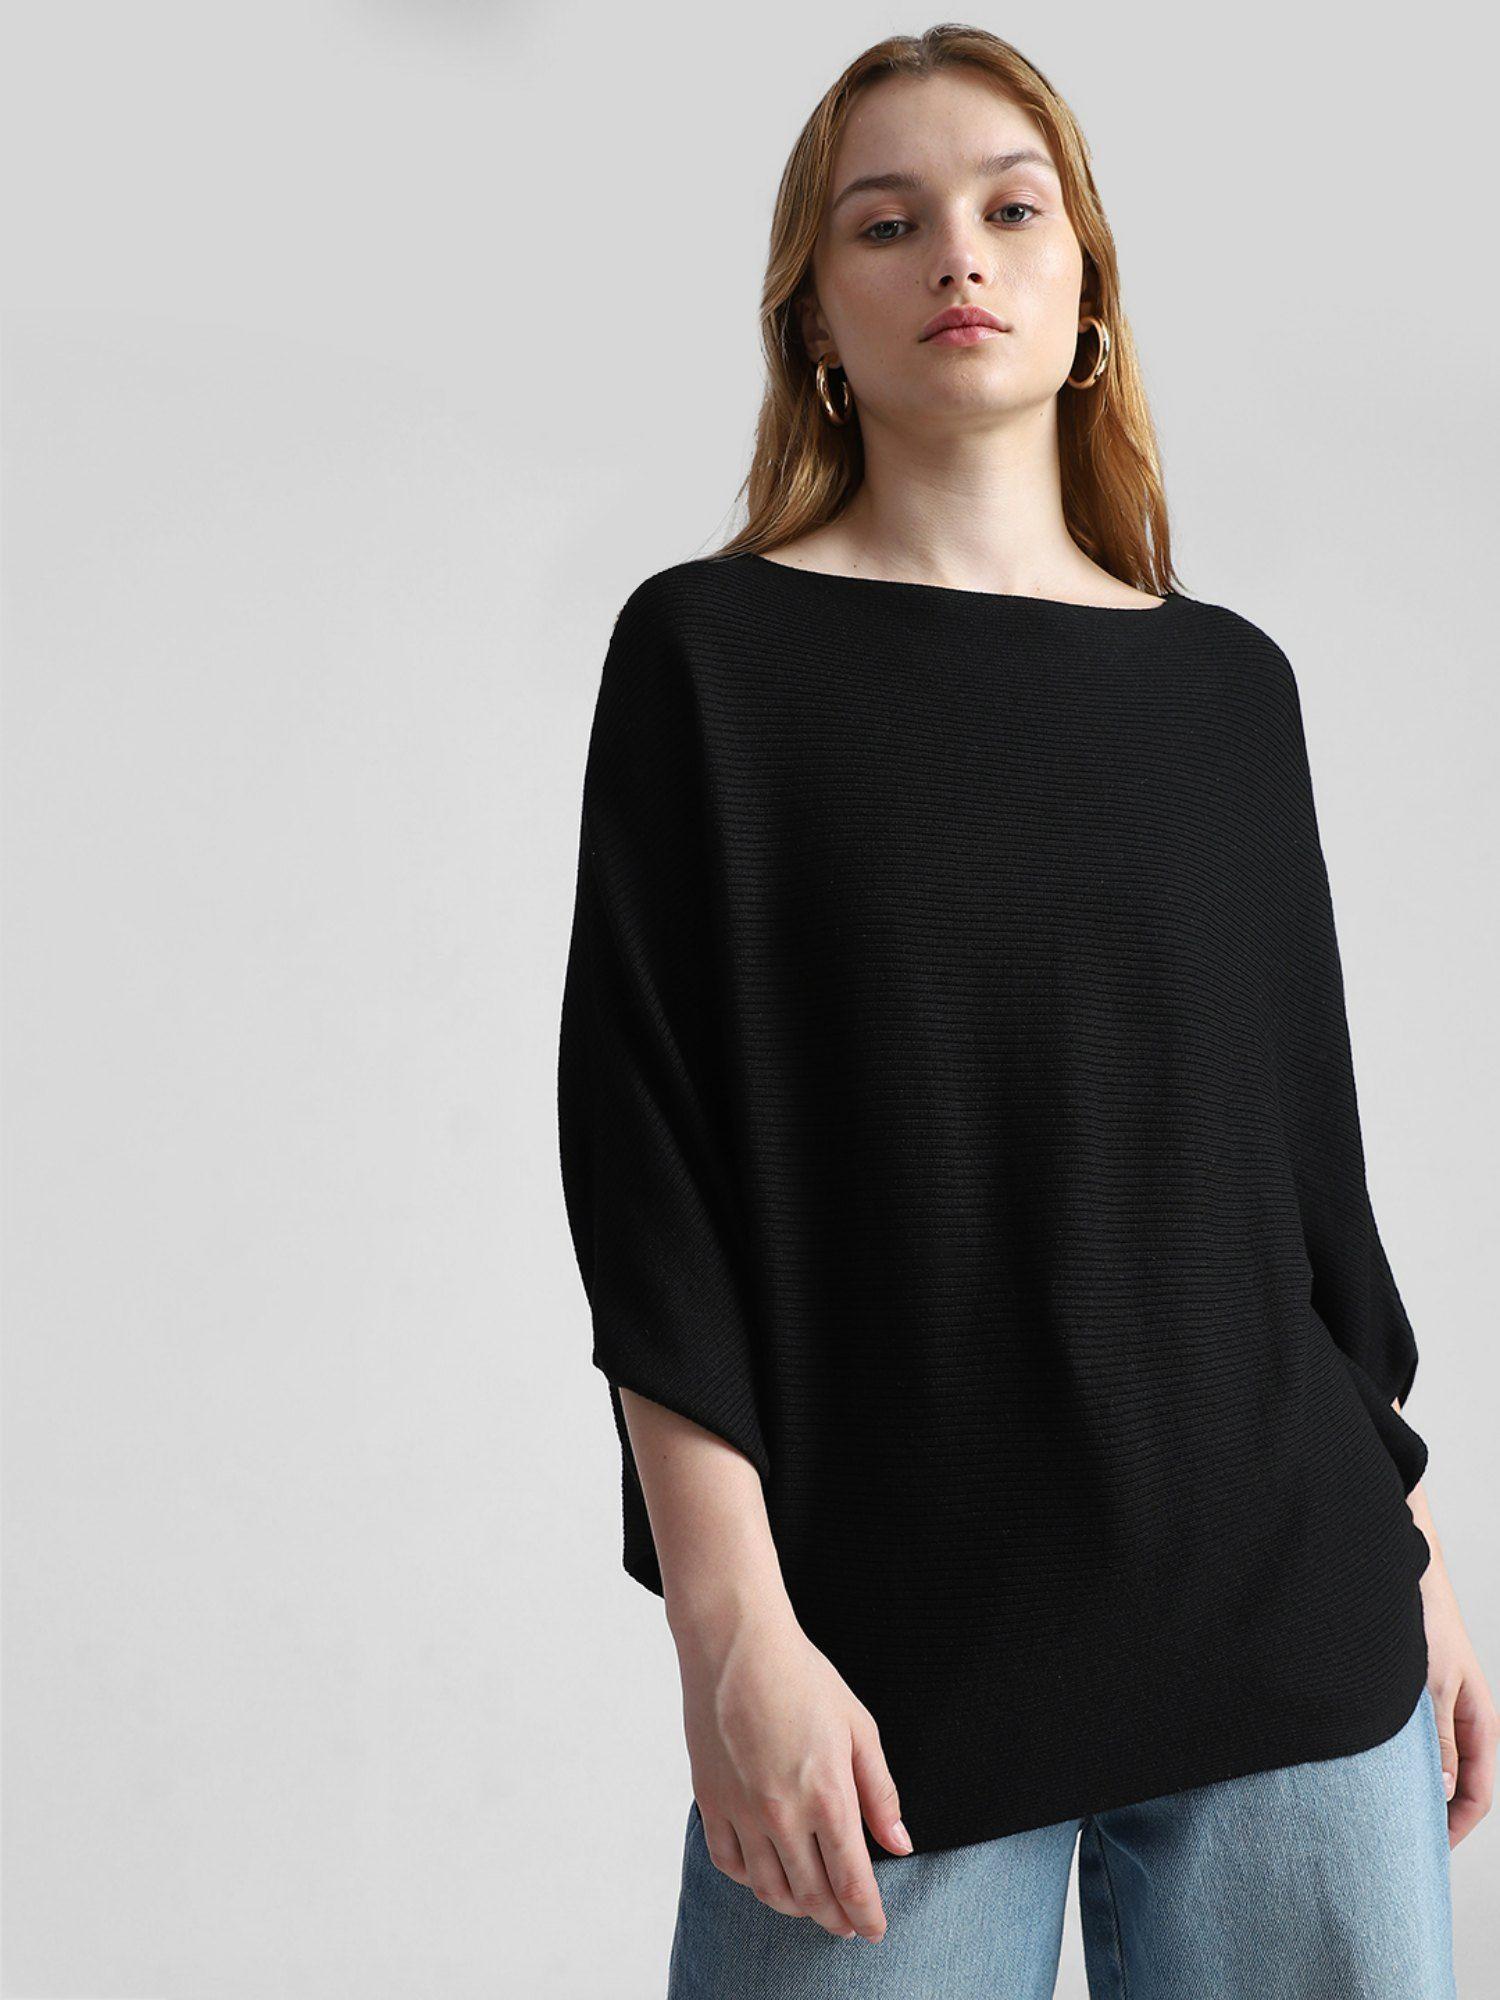 women-solid-black-sweater